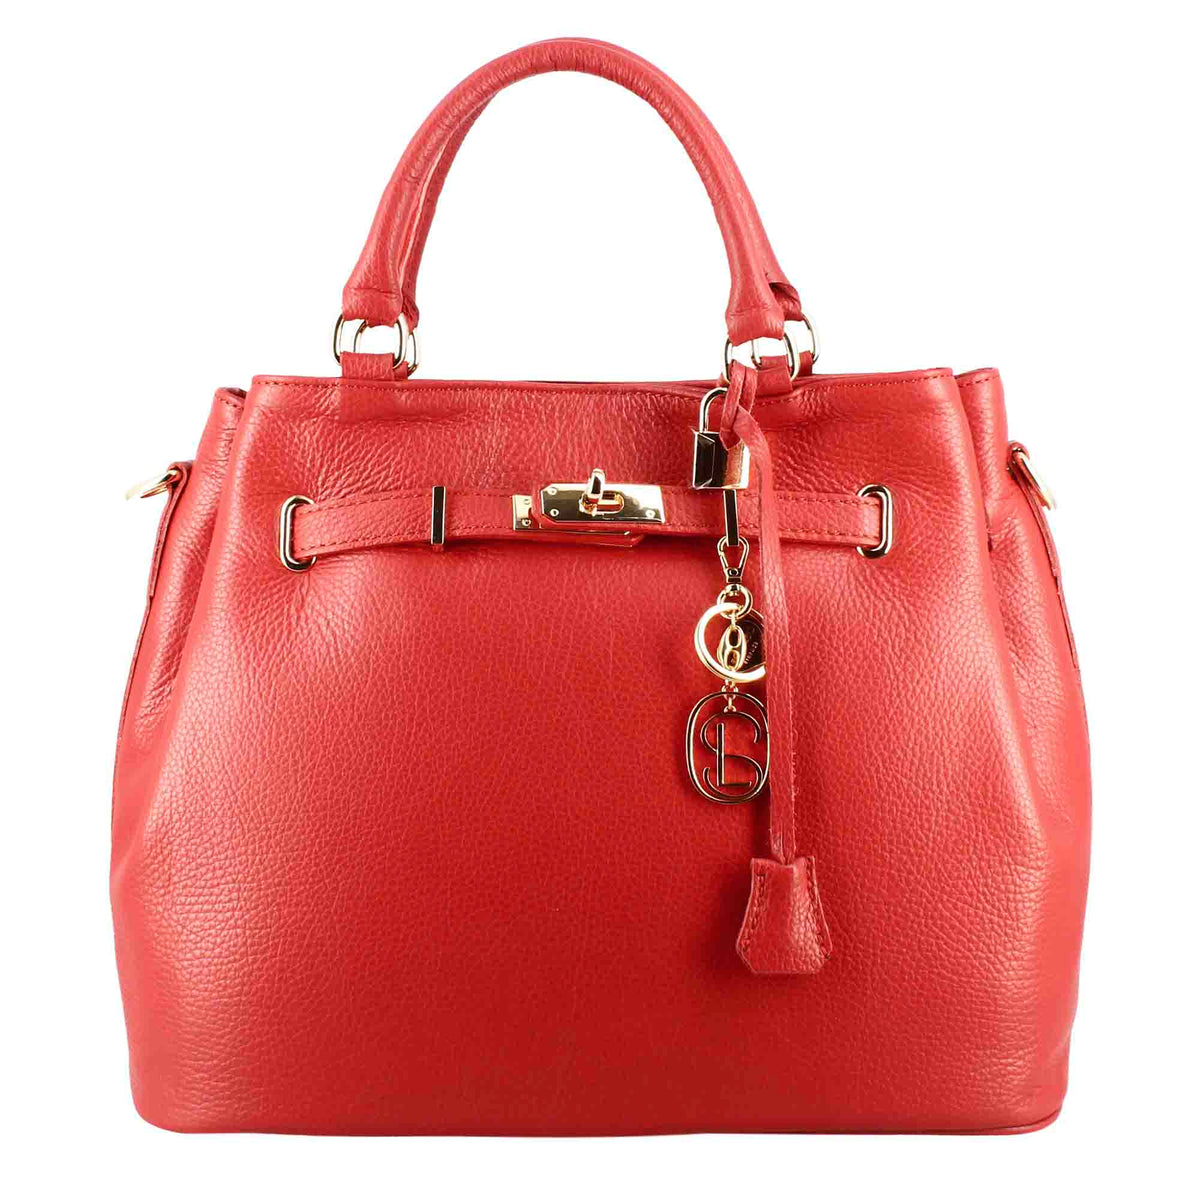 Frida leather handbag with removable red shoulder strap